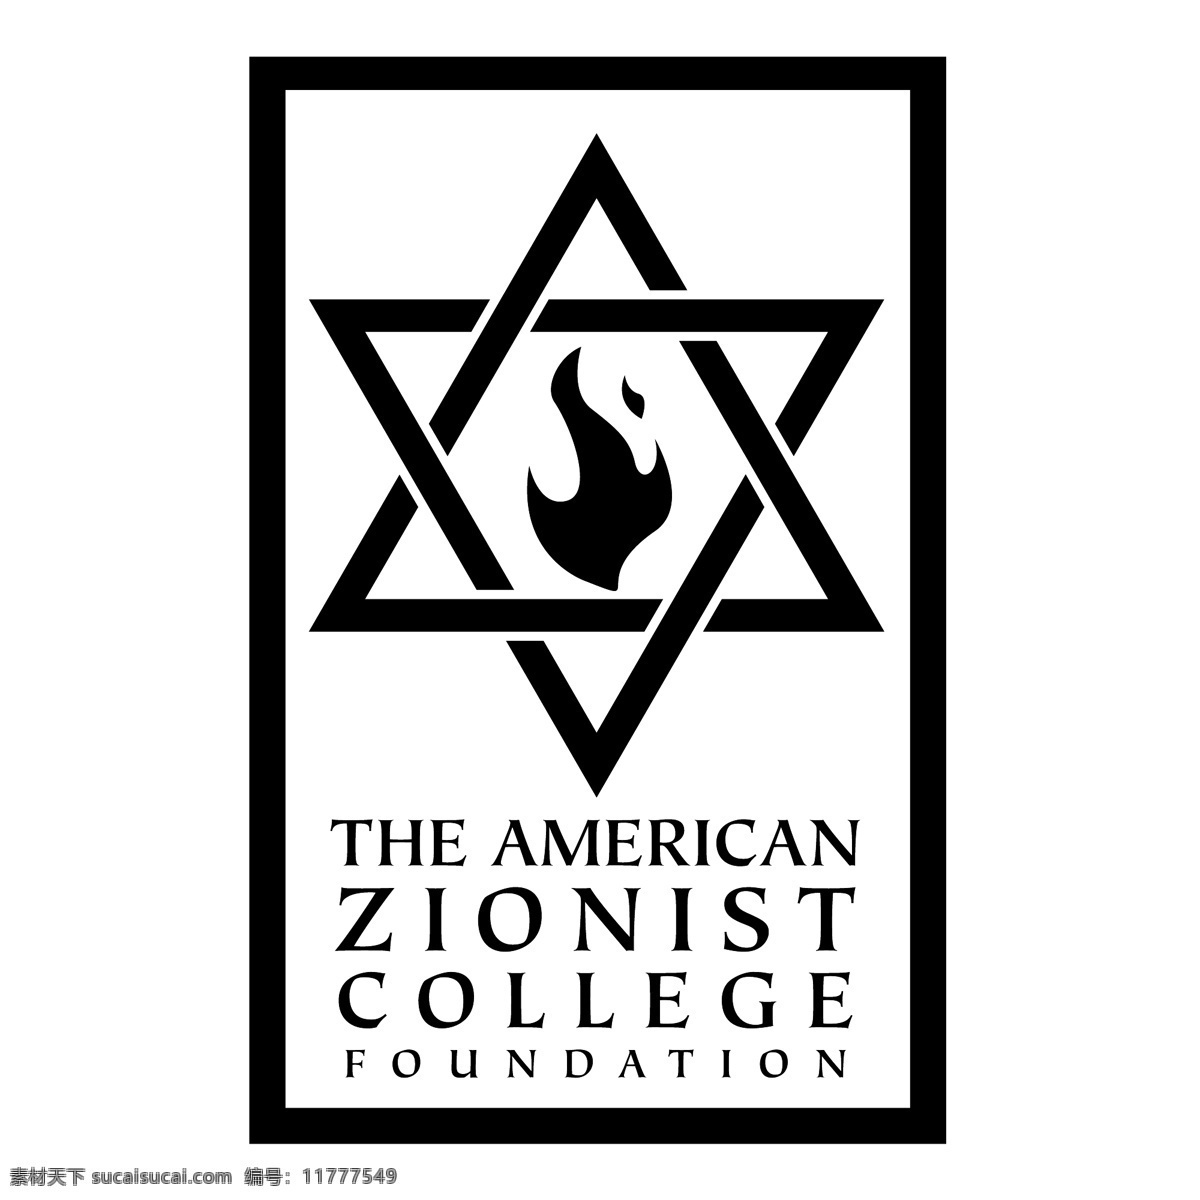 美国 犹太 复国主义 学院 基金会 基础 犹太复国主义 美国人